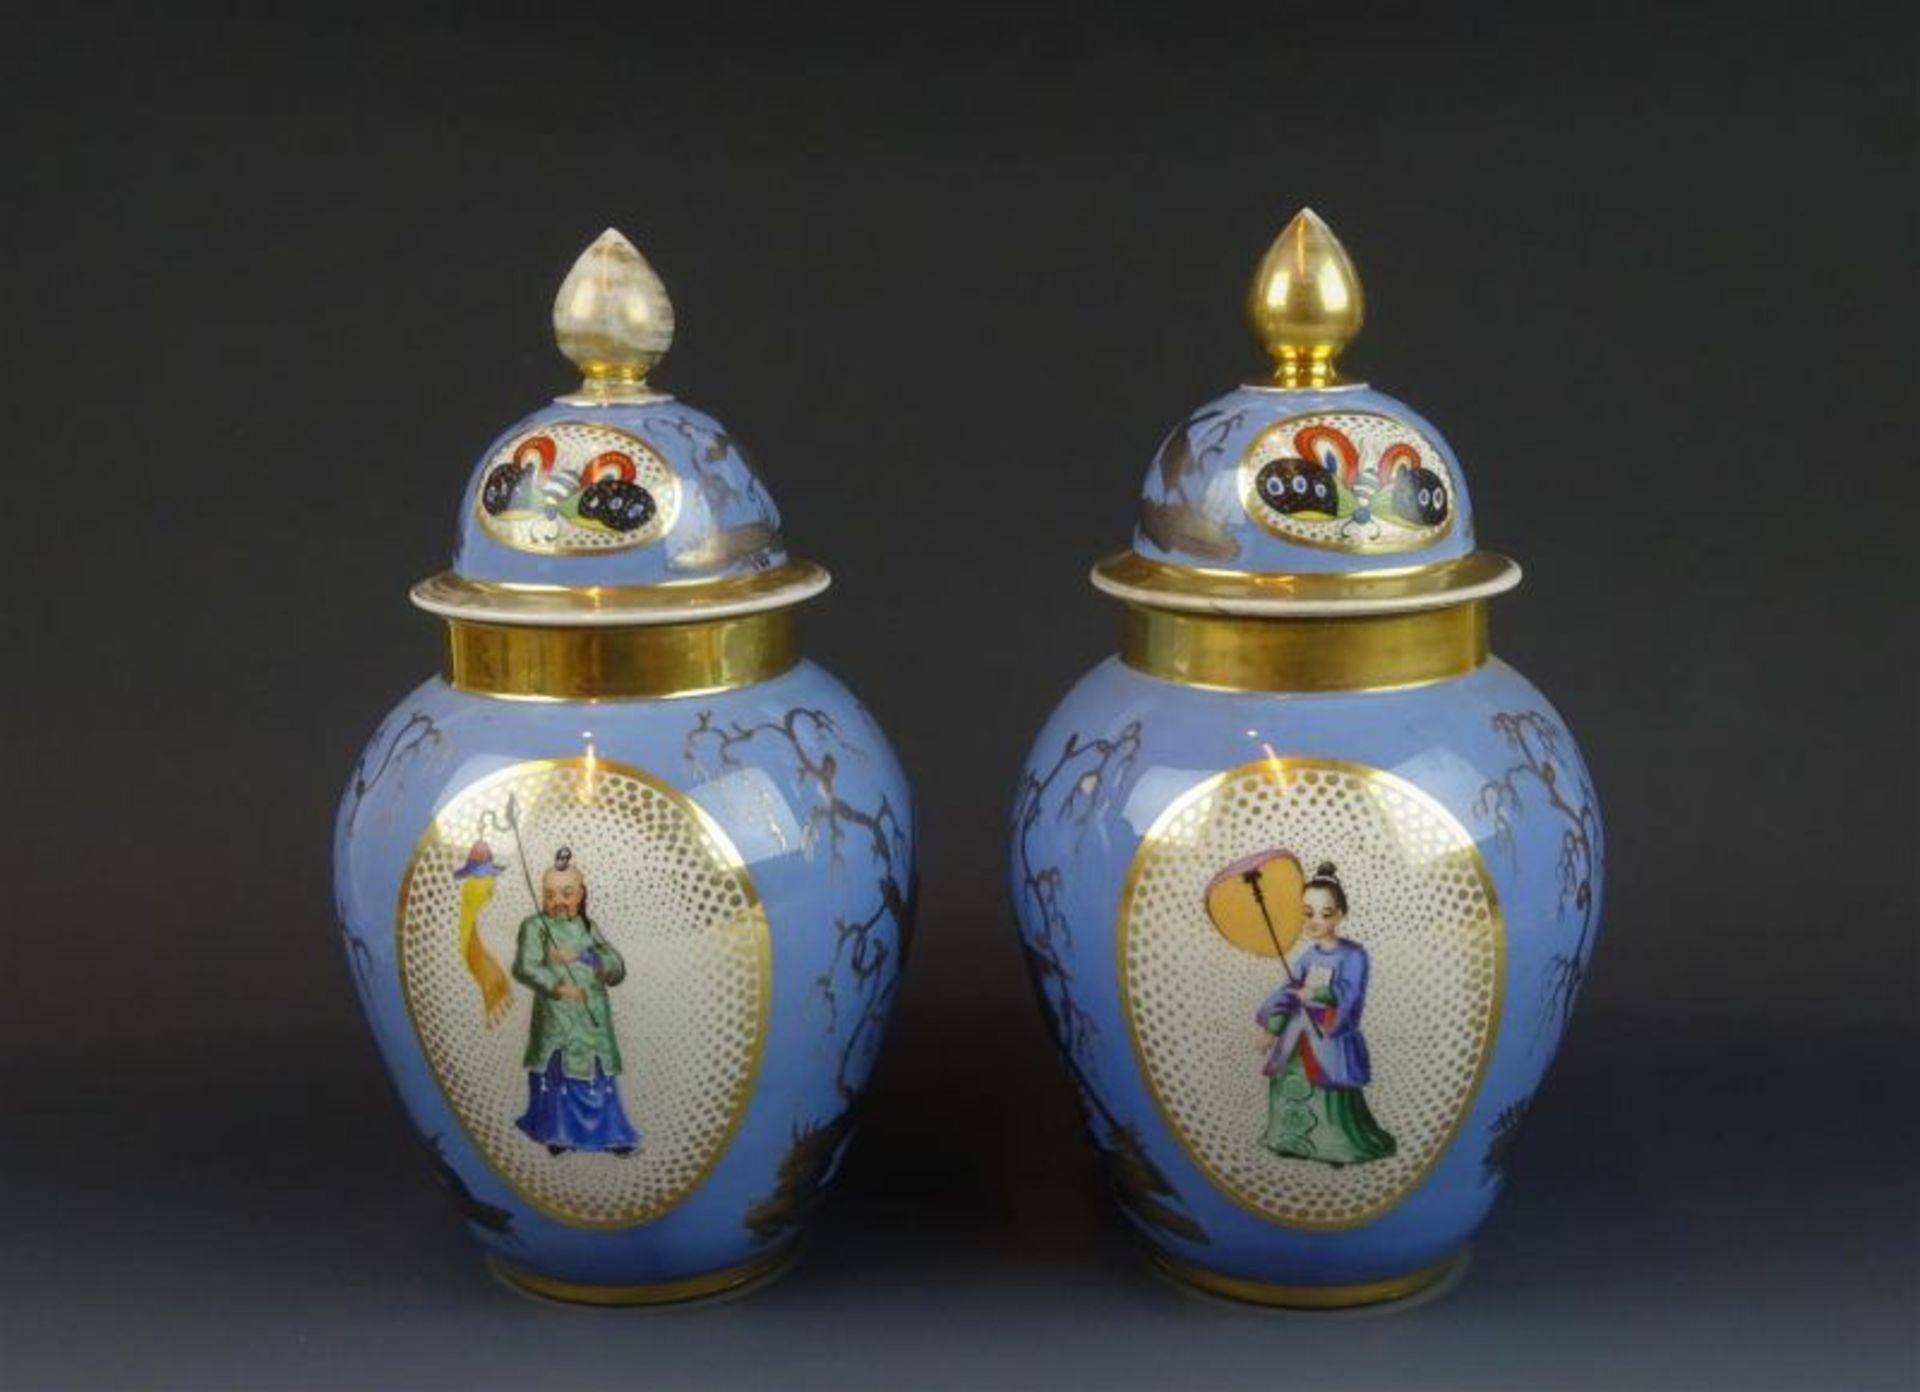 2 Franse porseleinen dekselvazen met decor van oosterse figuren, 19e eeuw, h. 30 cm (1 vaas